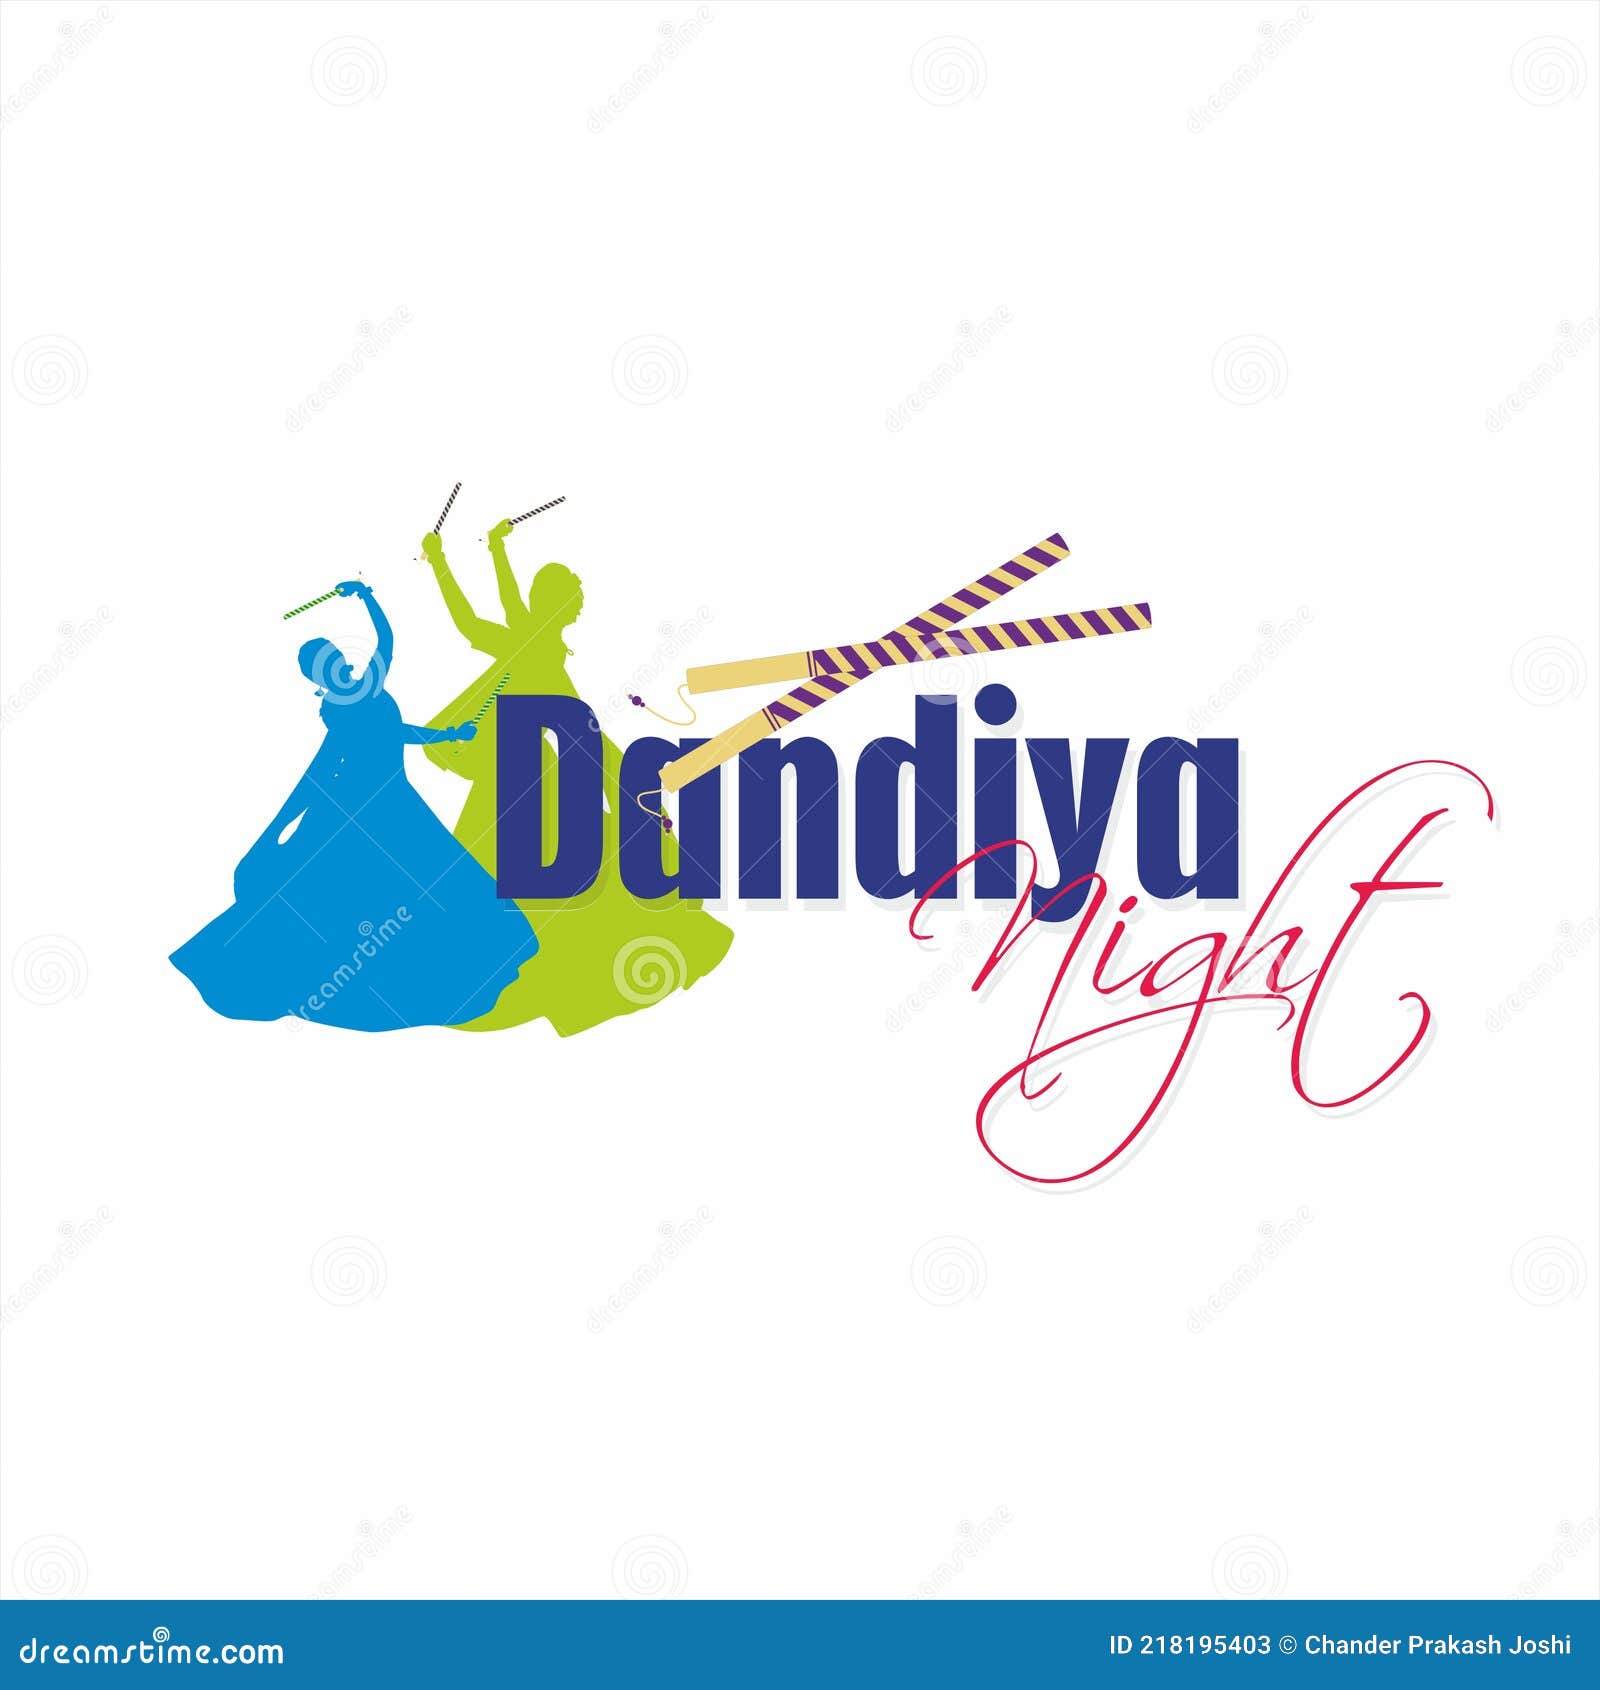 Dandiya Logo - Raas Garba Logo Png - Free Transparent PNG Download - PNGkey